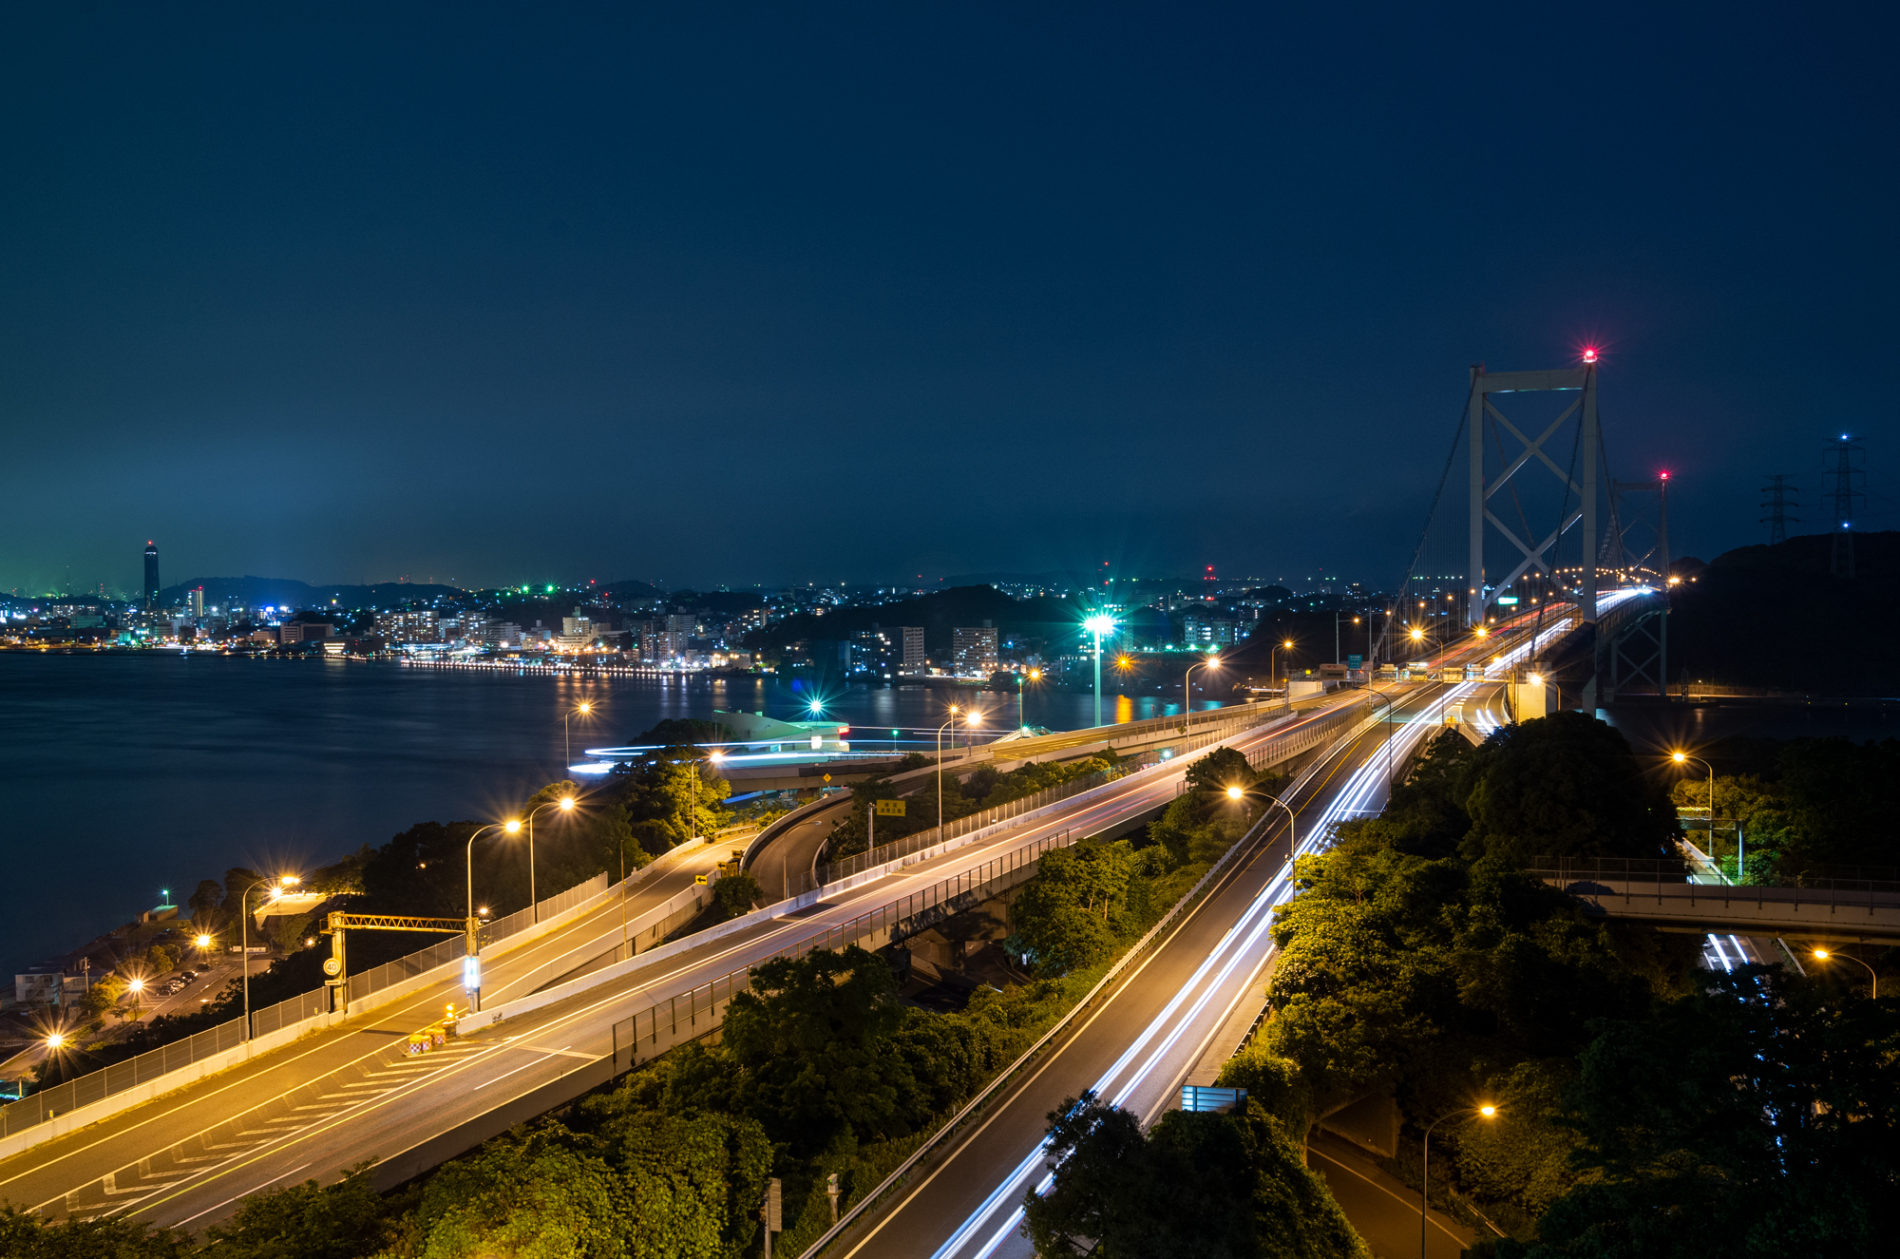 日本の本州(山口県下関市)と九州(福岡県北九州市)を繋ぐ関門海峡 関門橋の夜景